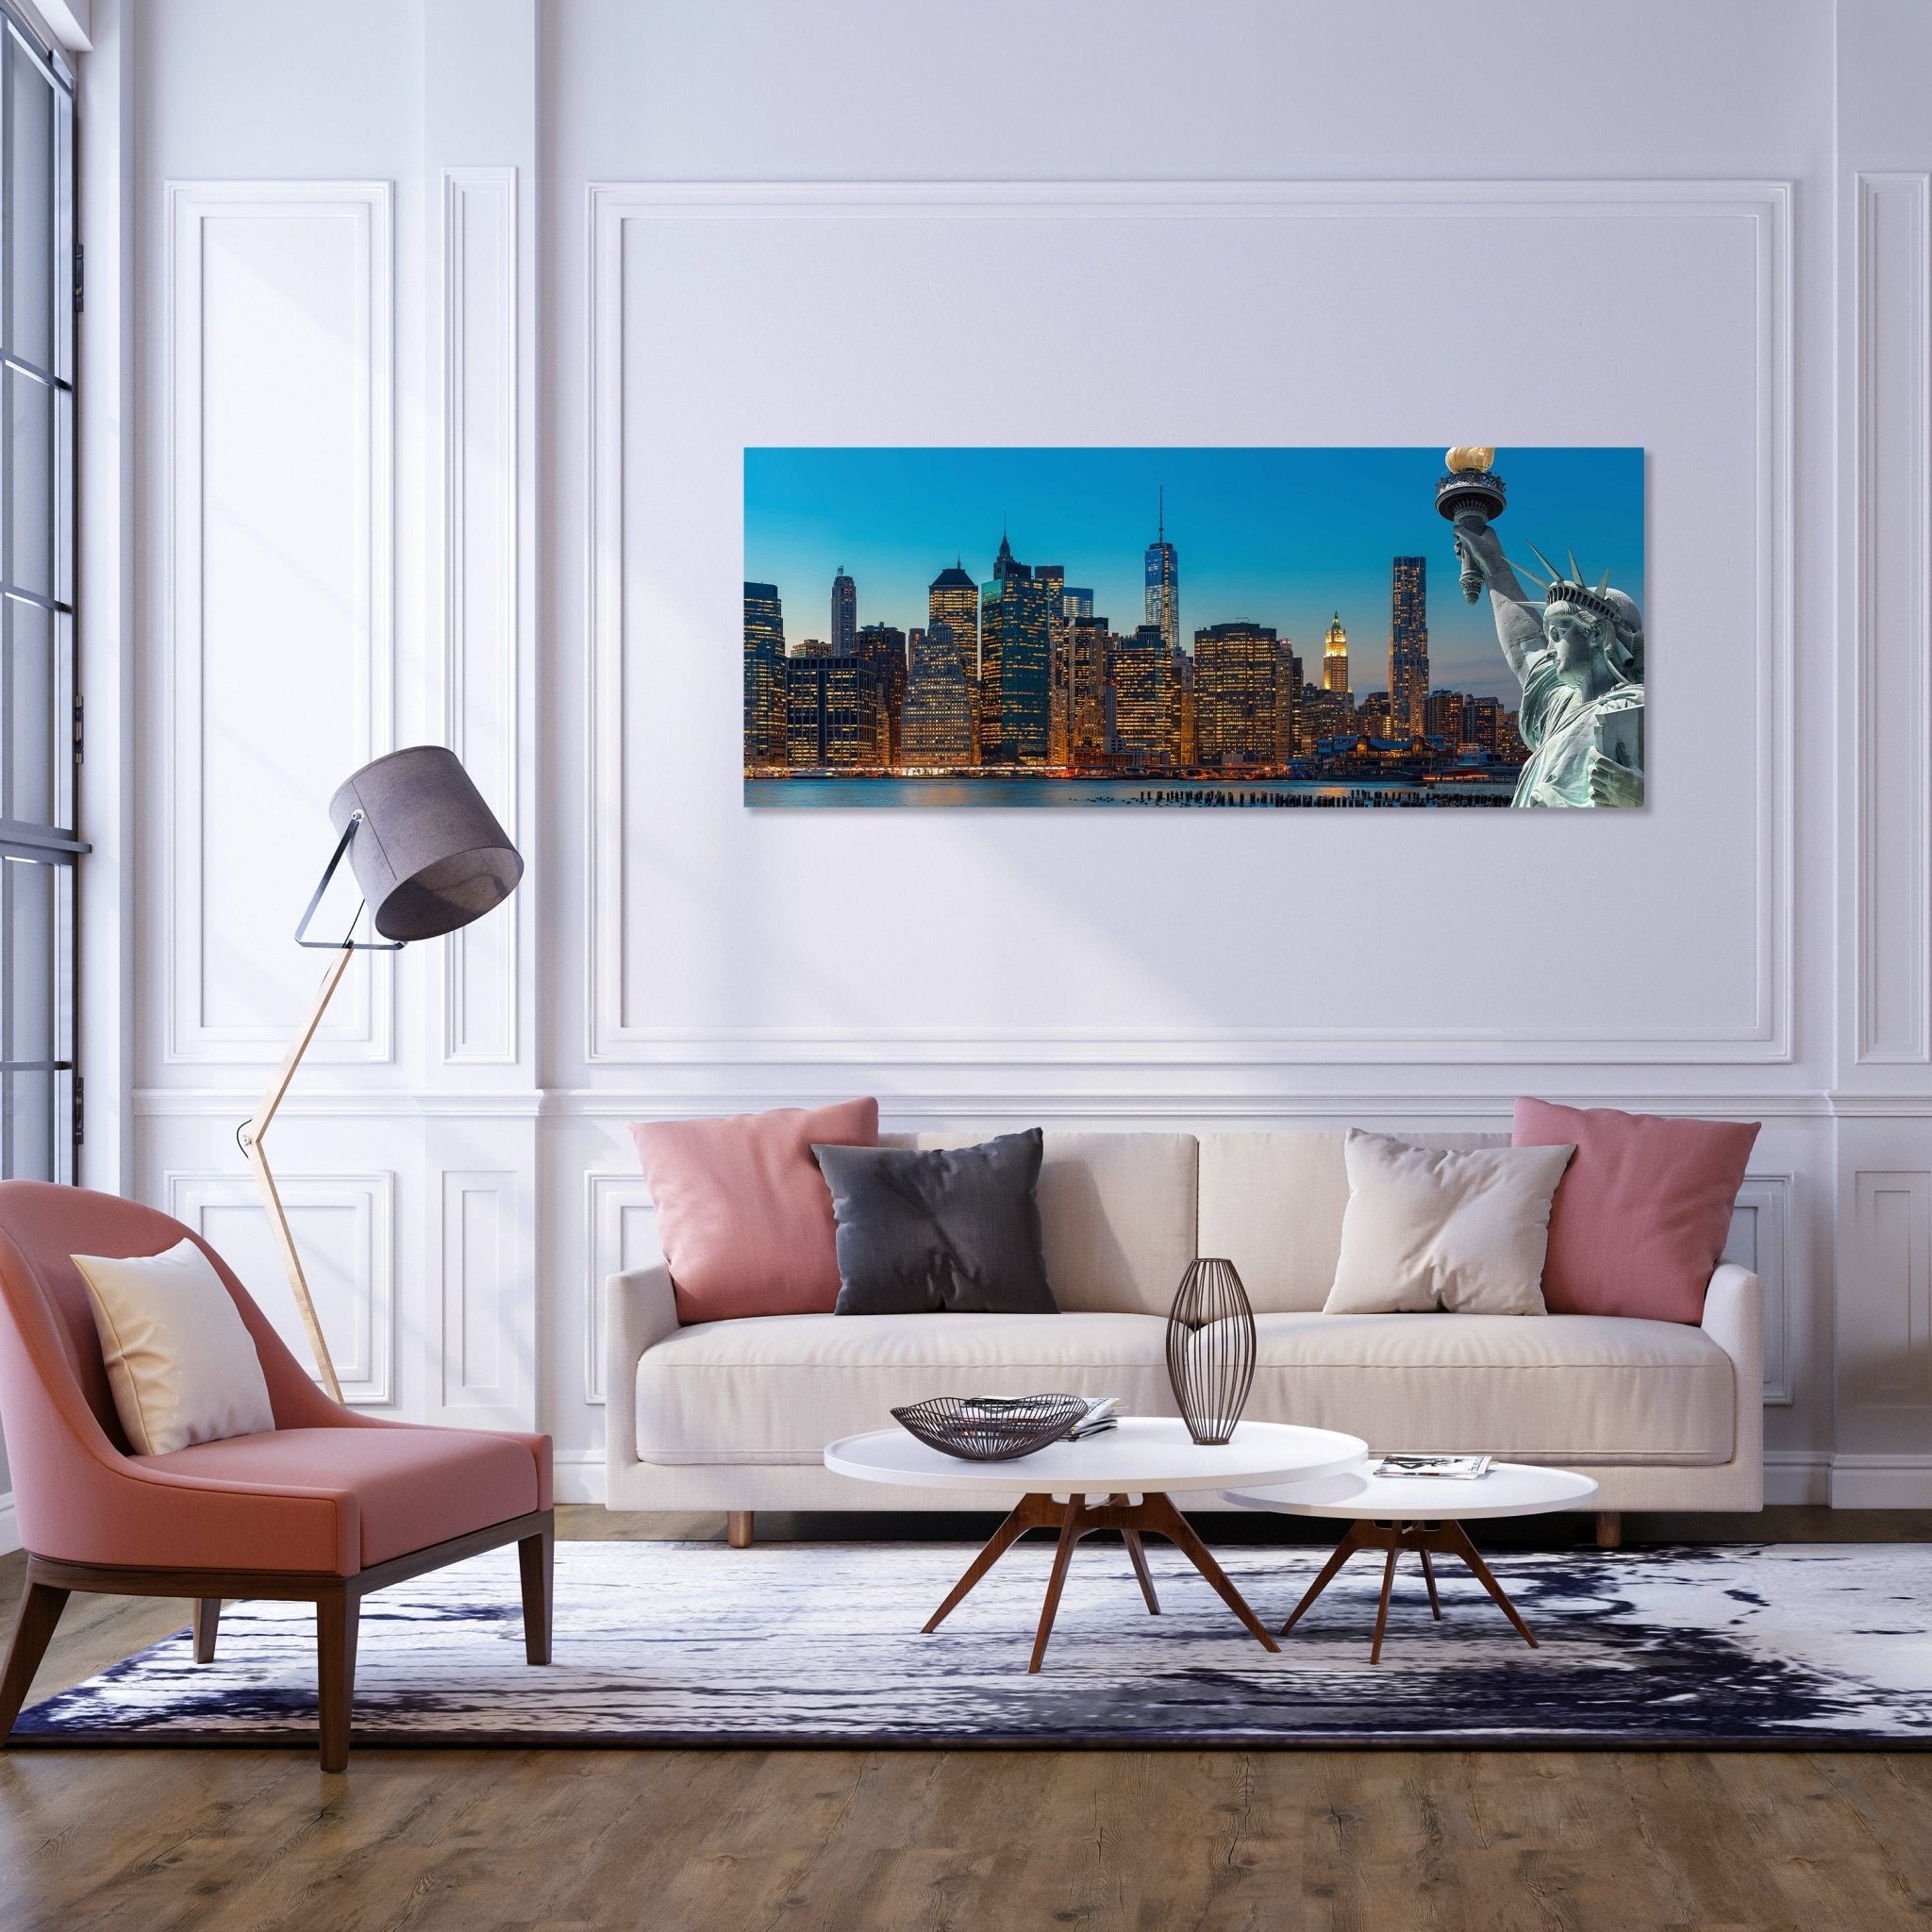 Leinwandbild New York Skyline Freiheitsstatue M0726 kaufen - Bild 2